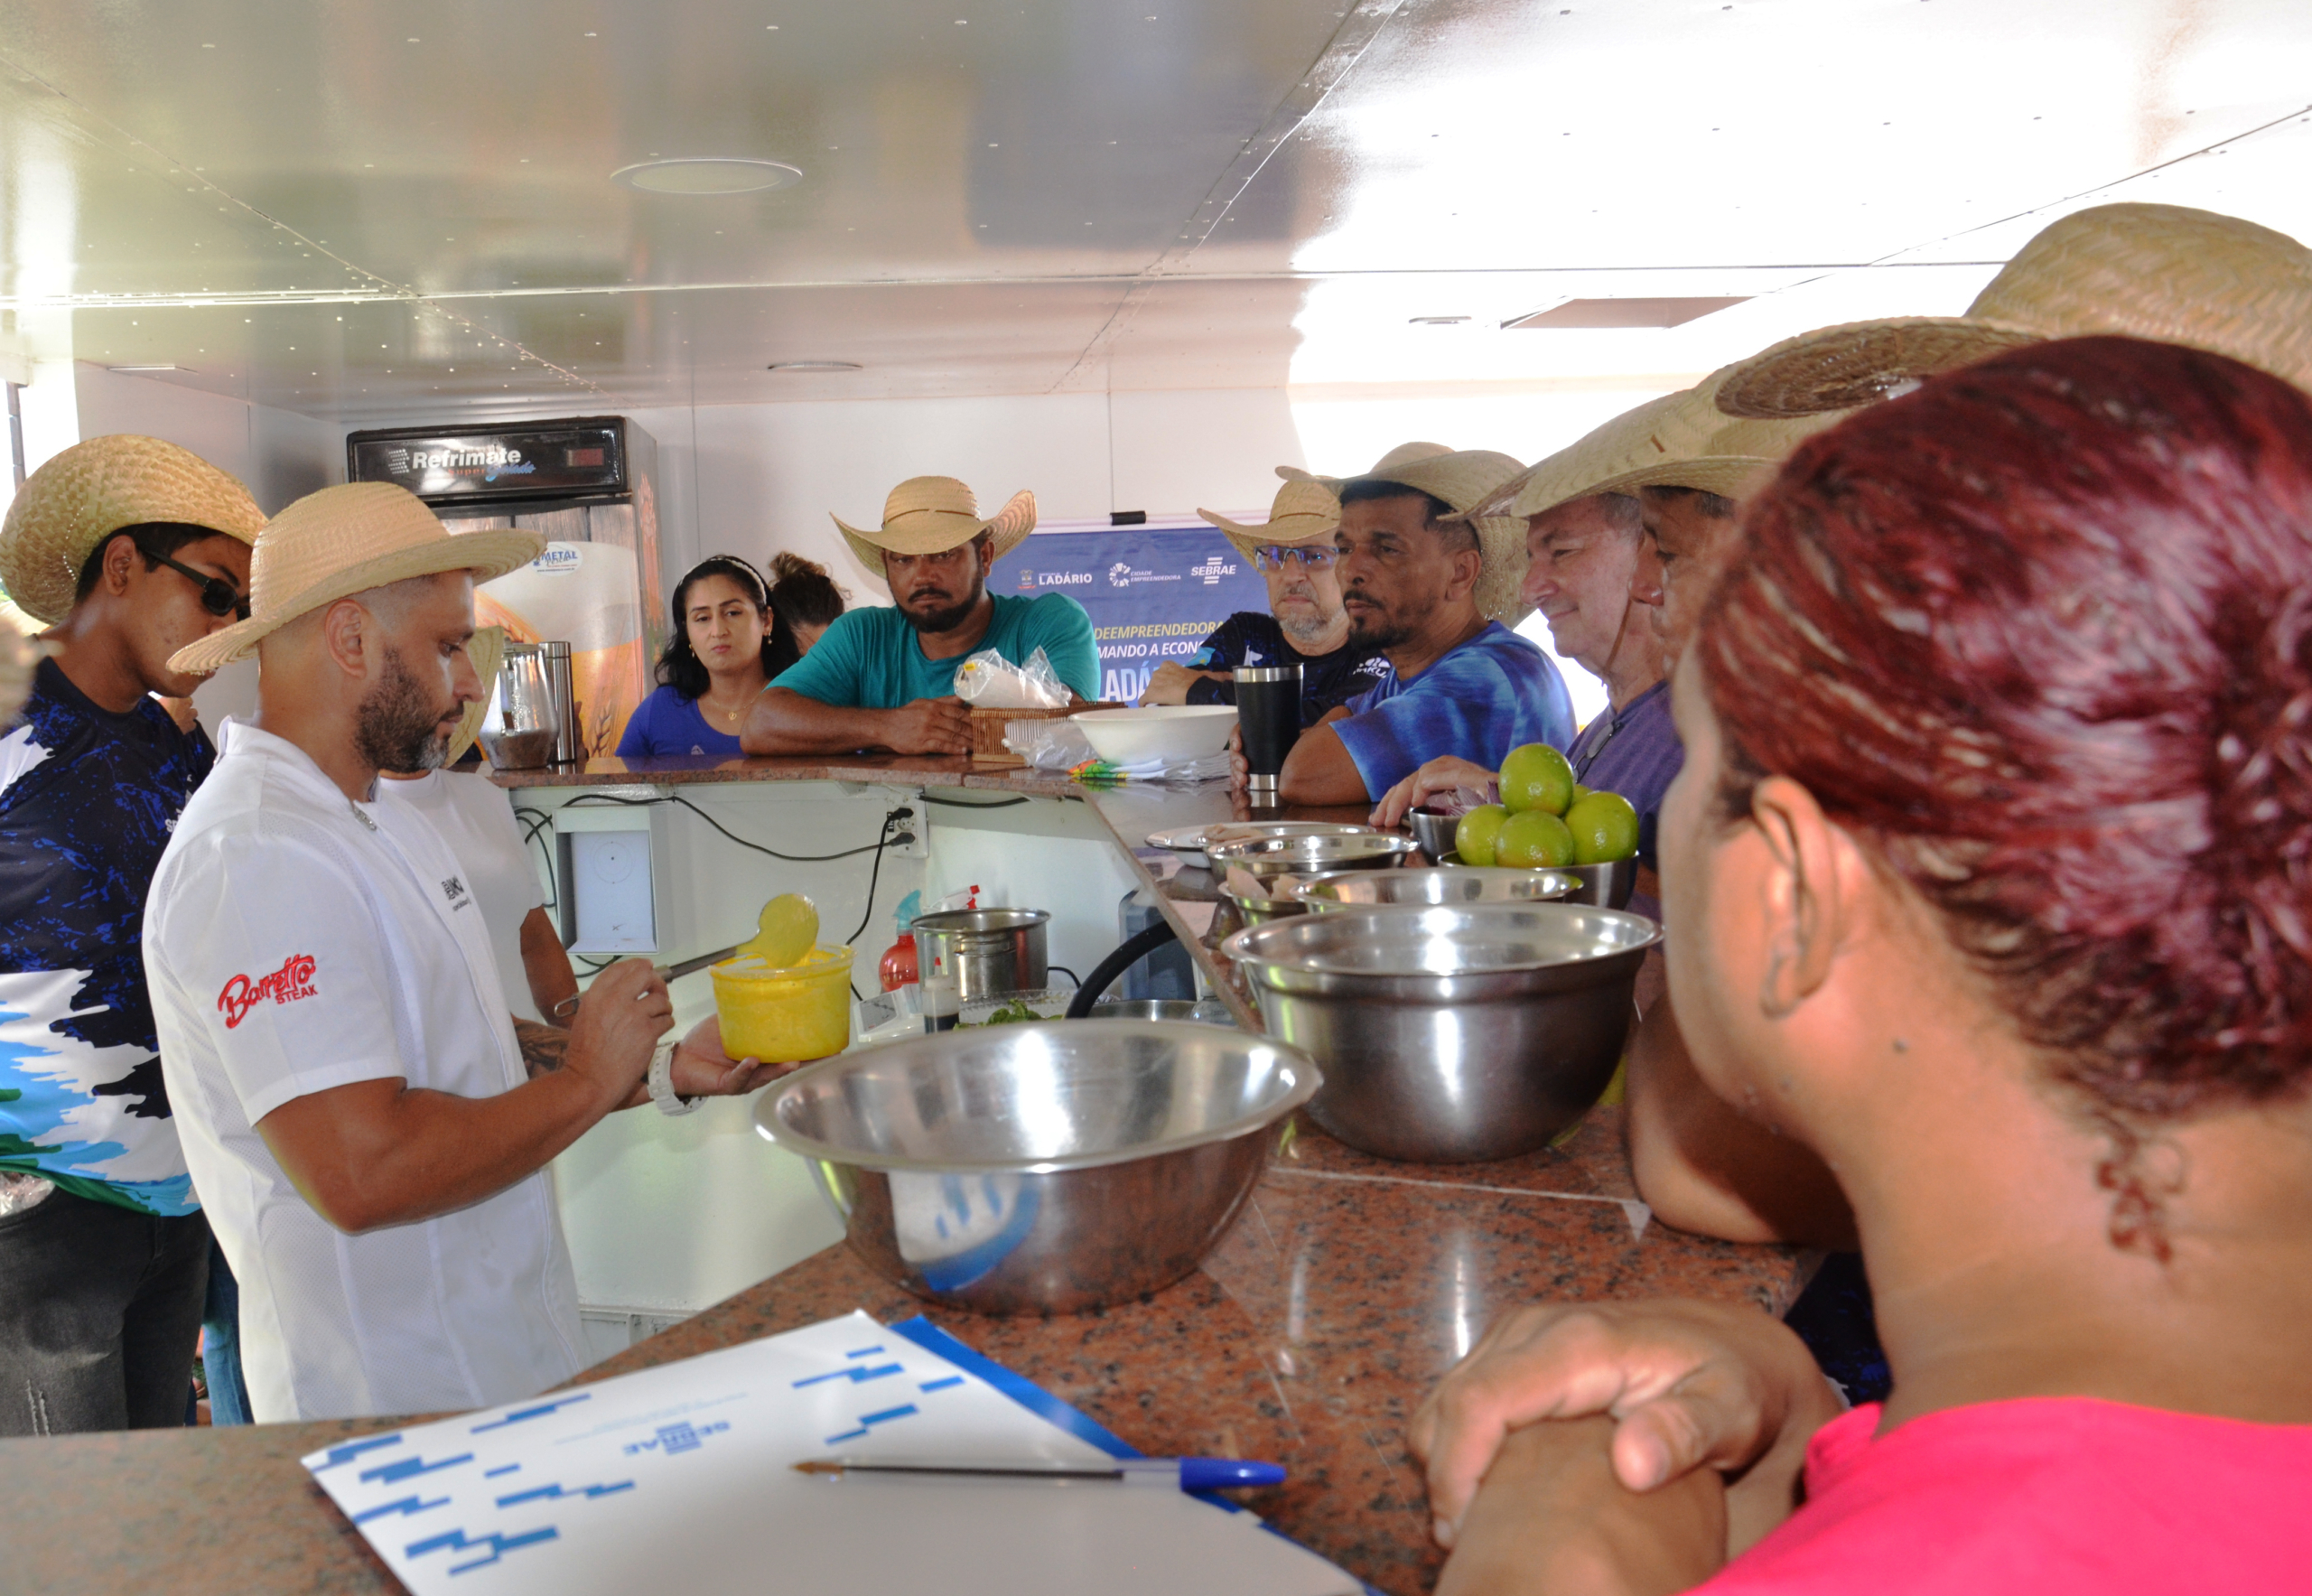 Saíu na mídia: Empreendedores do Pantanal querem aprimorar atendimento e fisgar turistas pela gastronomia